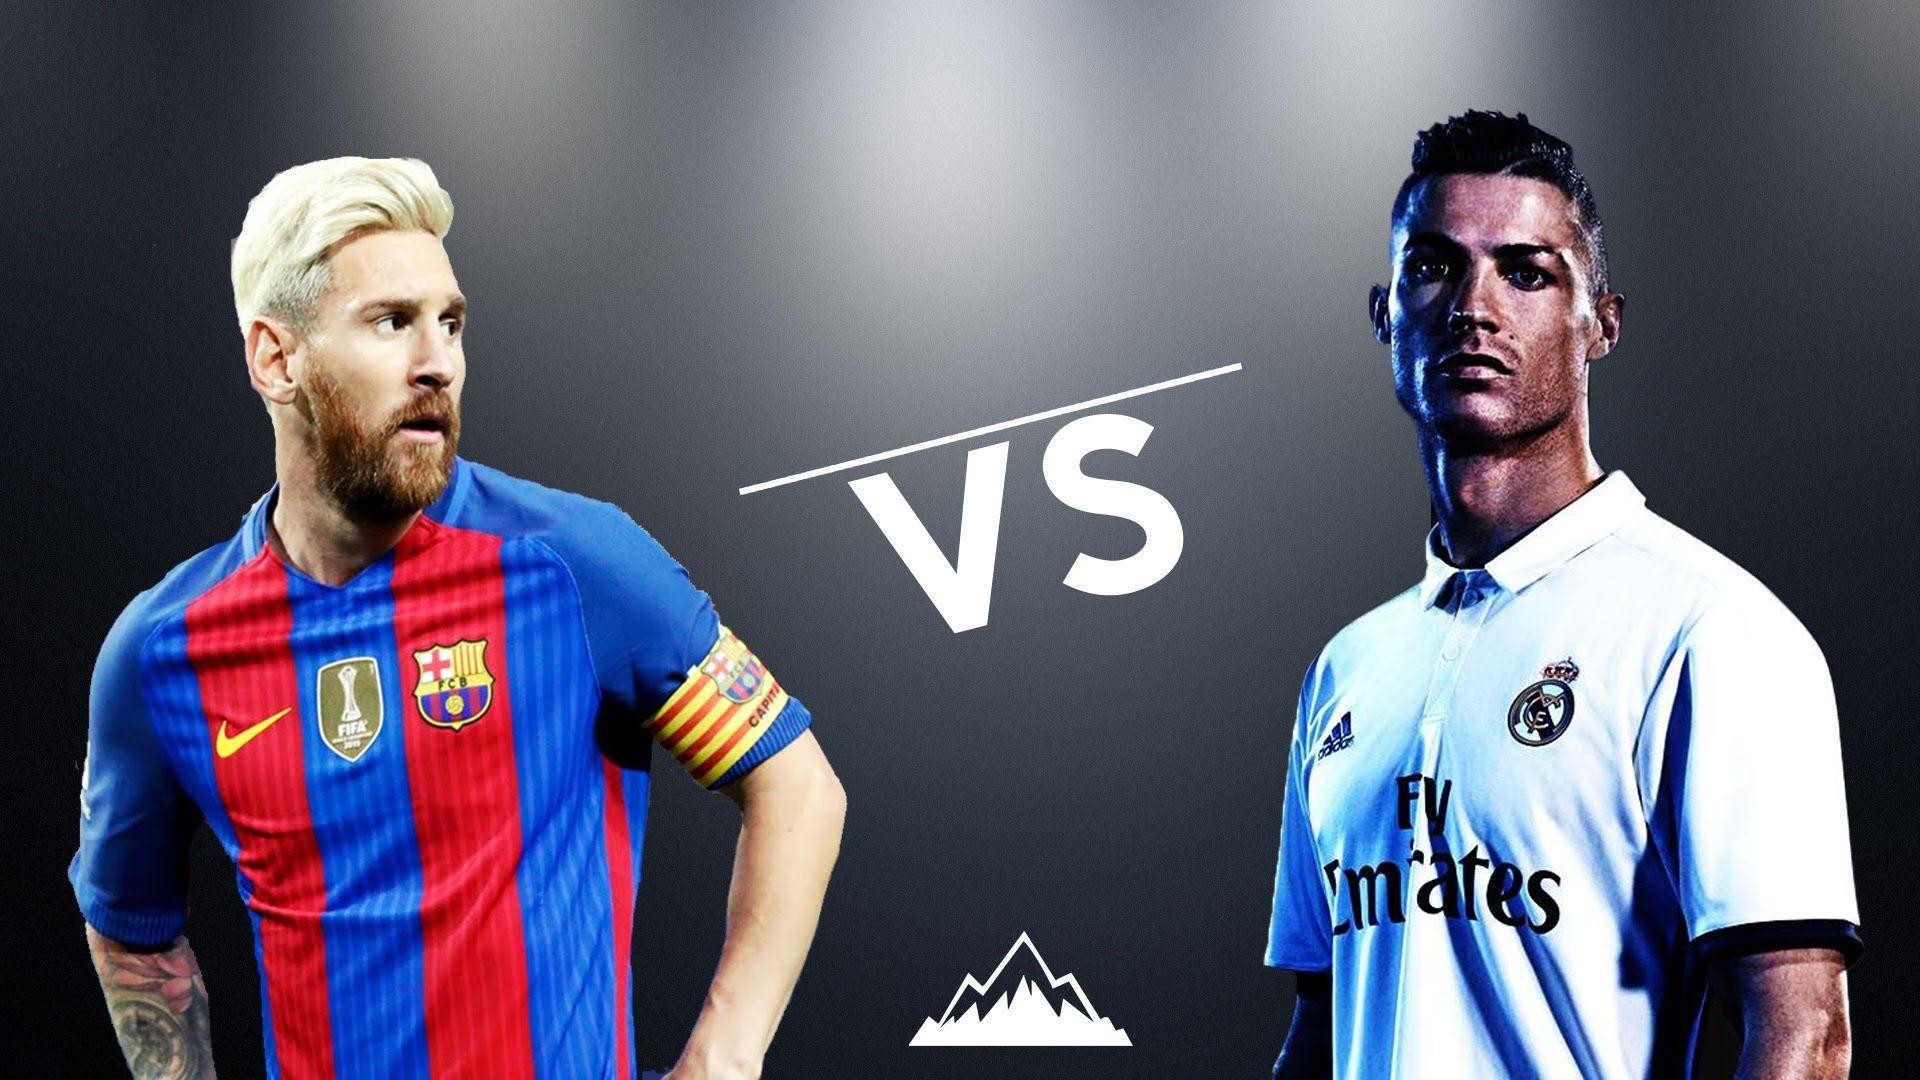 1920x1080 Cristiano Ronaldo vs Lionel Messi - Epic Battle 2016/17 HD - YouTube